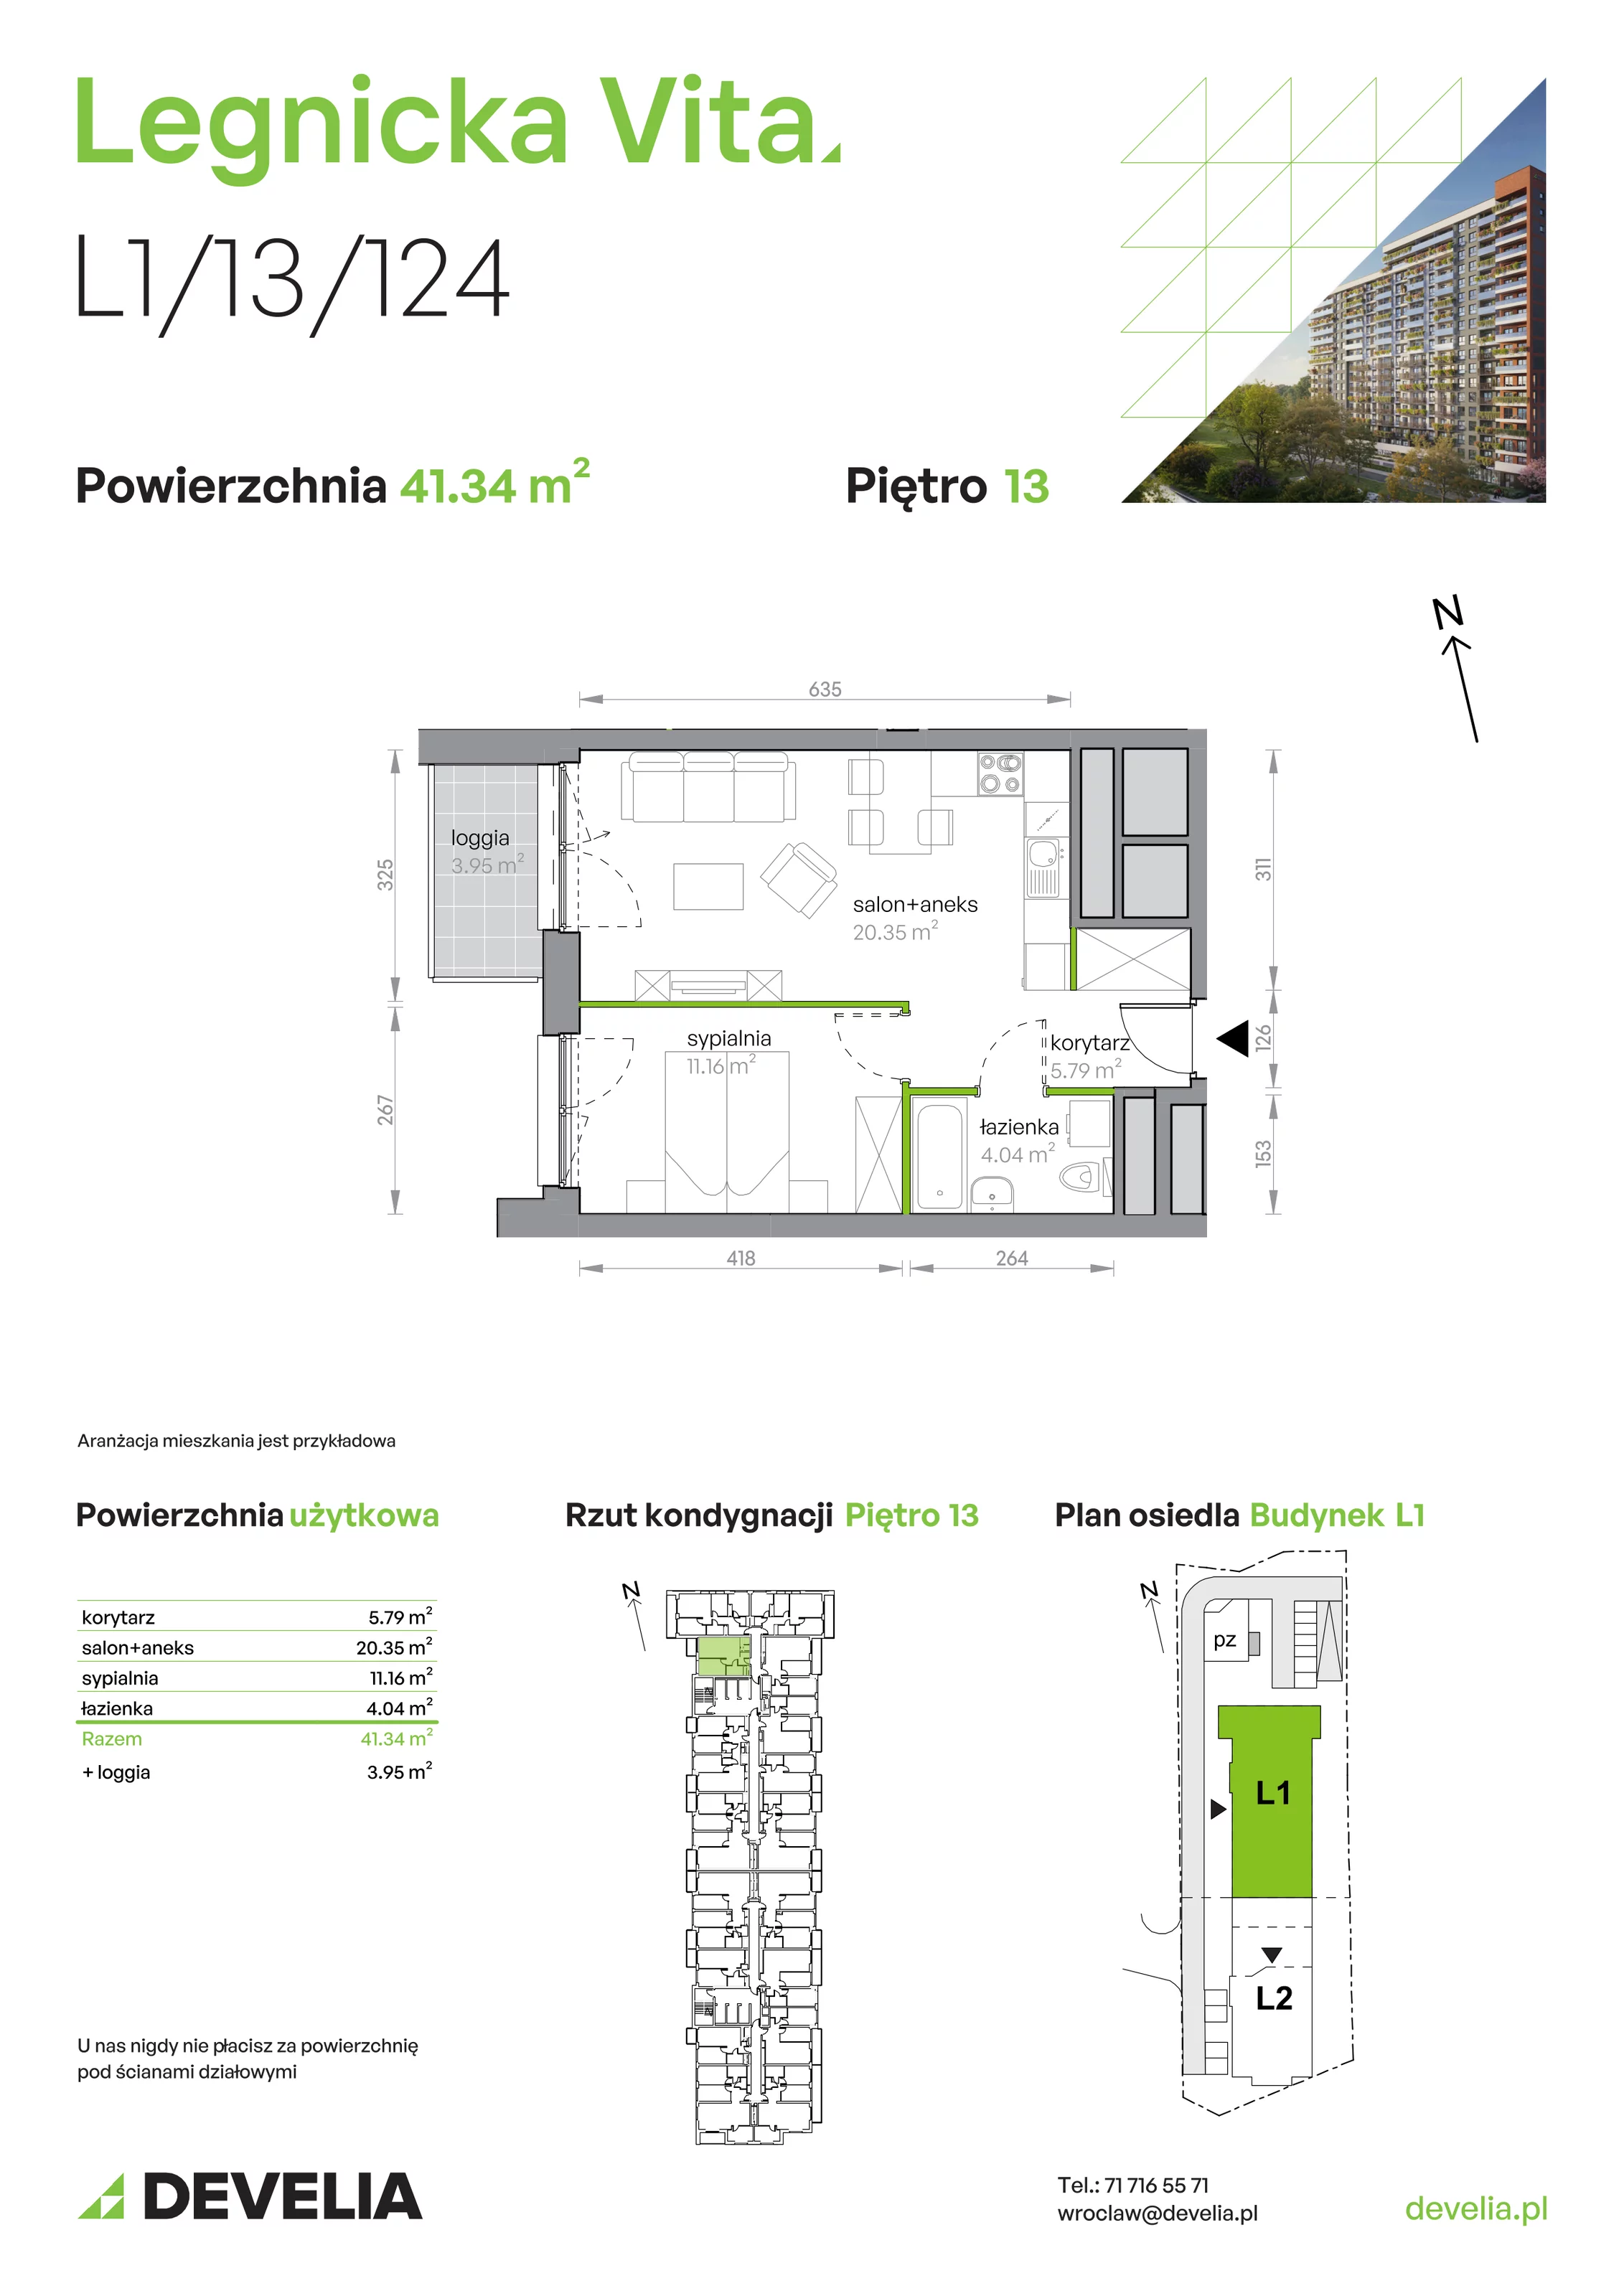 Mieszkanie 41,34 m², piętro 13, oferta nr L1/13/124, Legnicka Vita, Wrocław, Gądów-Popowice Południowe, Popowice, ul. Legnicka 52 A